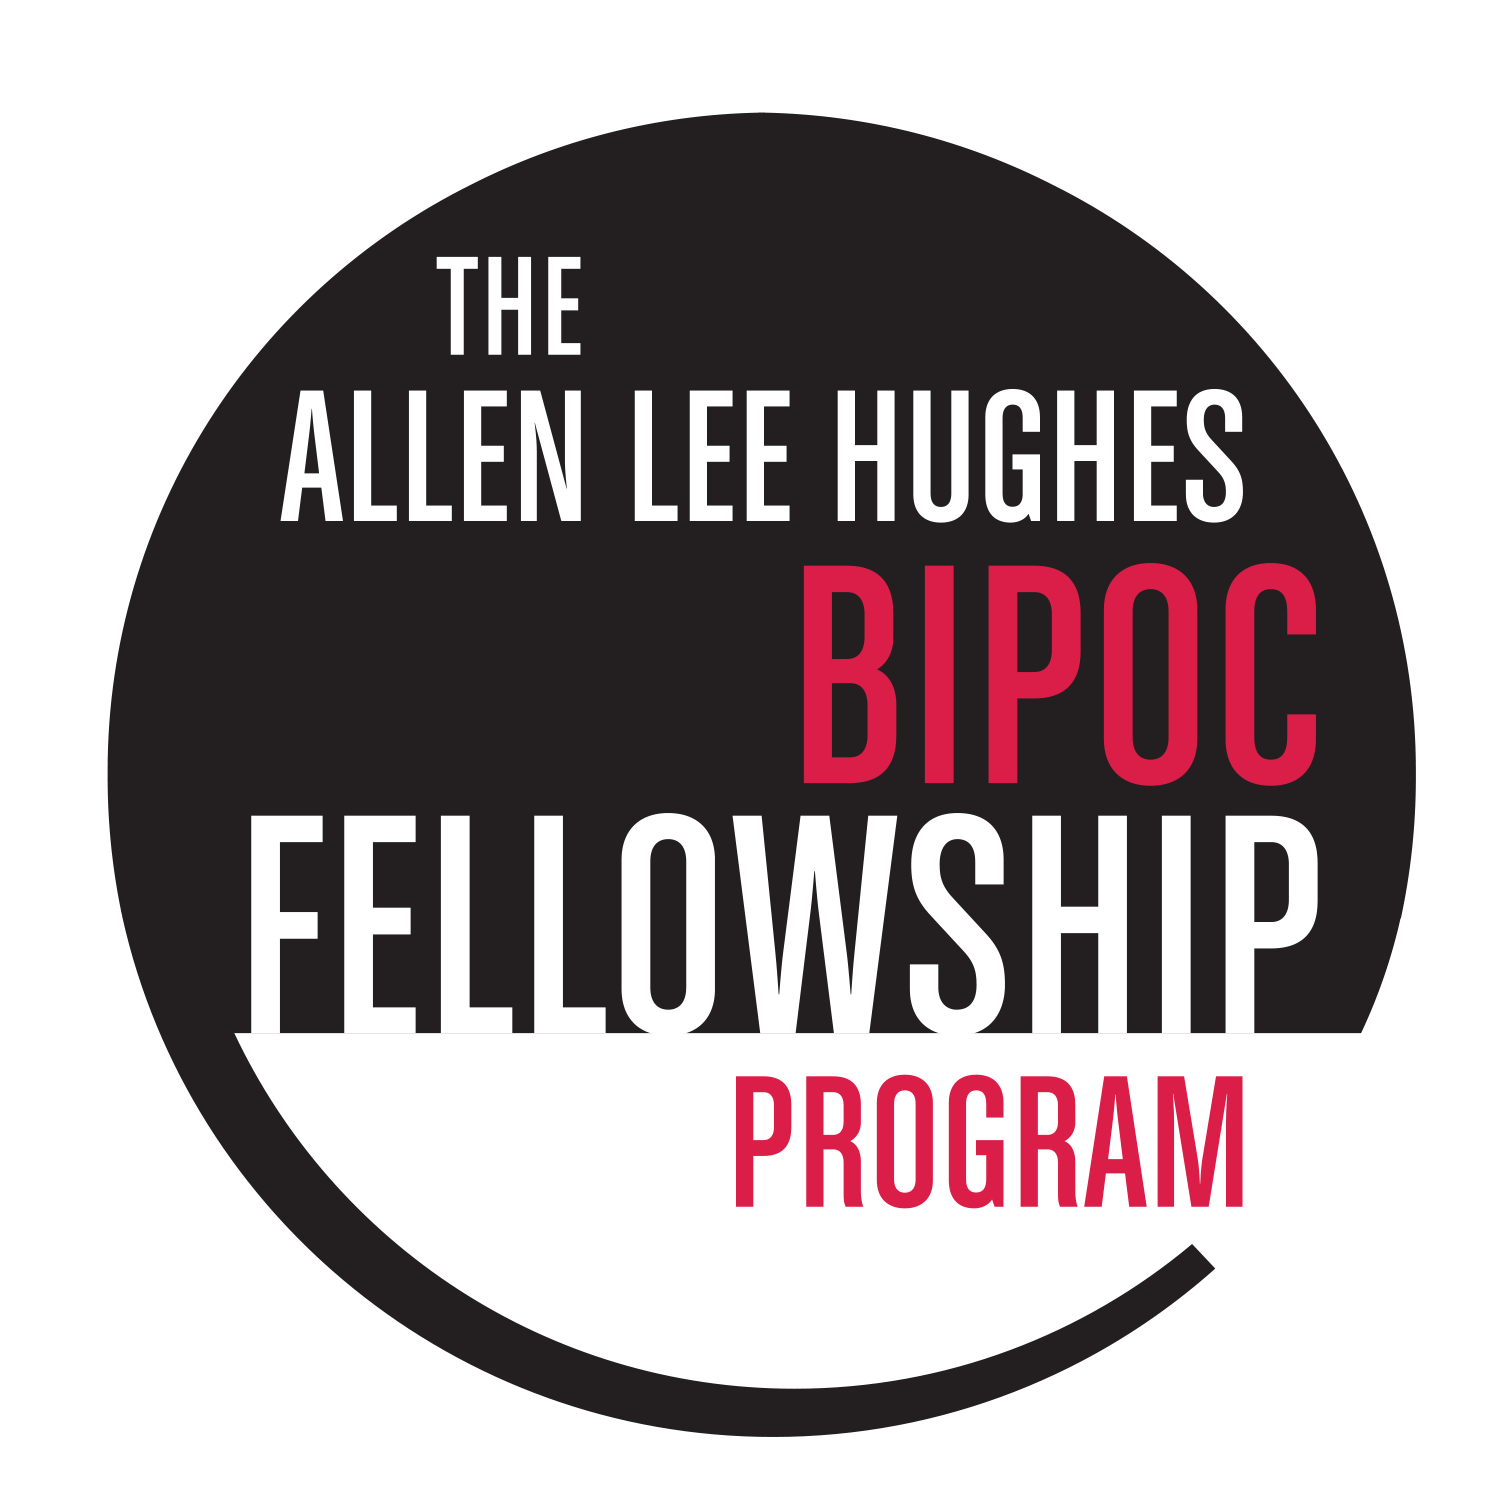 Allen Lee Hughes BIPOC Fellowship Program logo